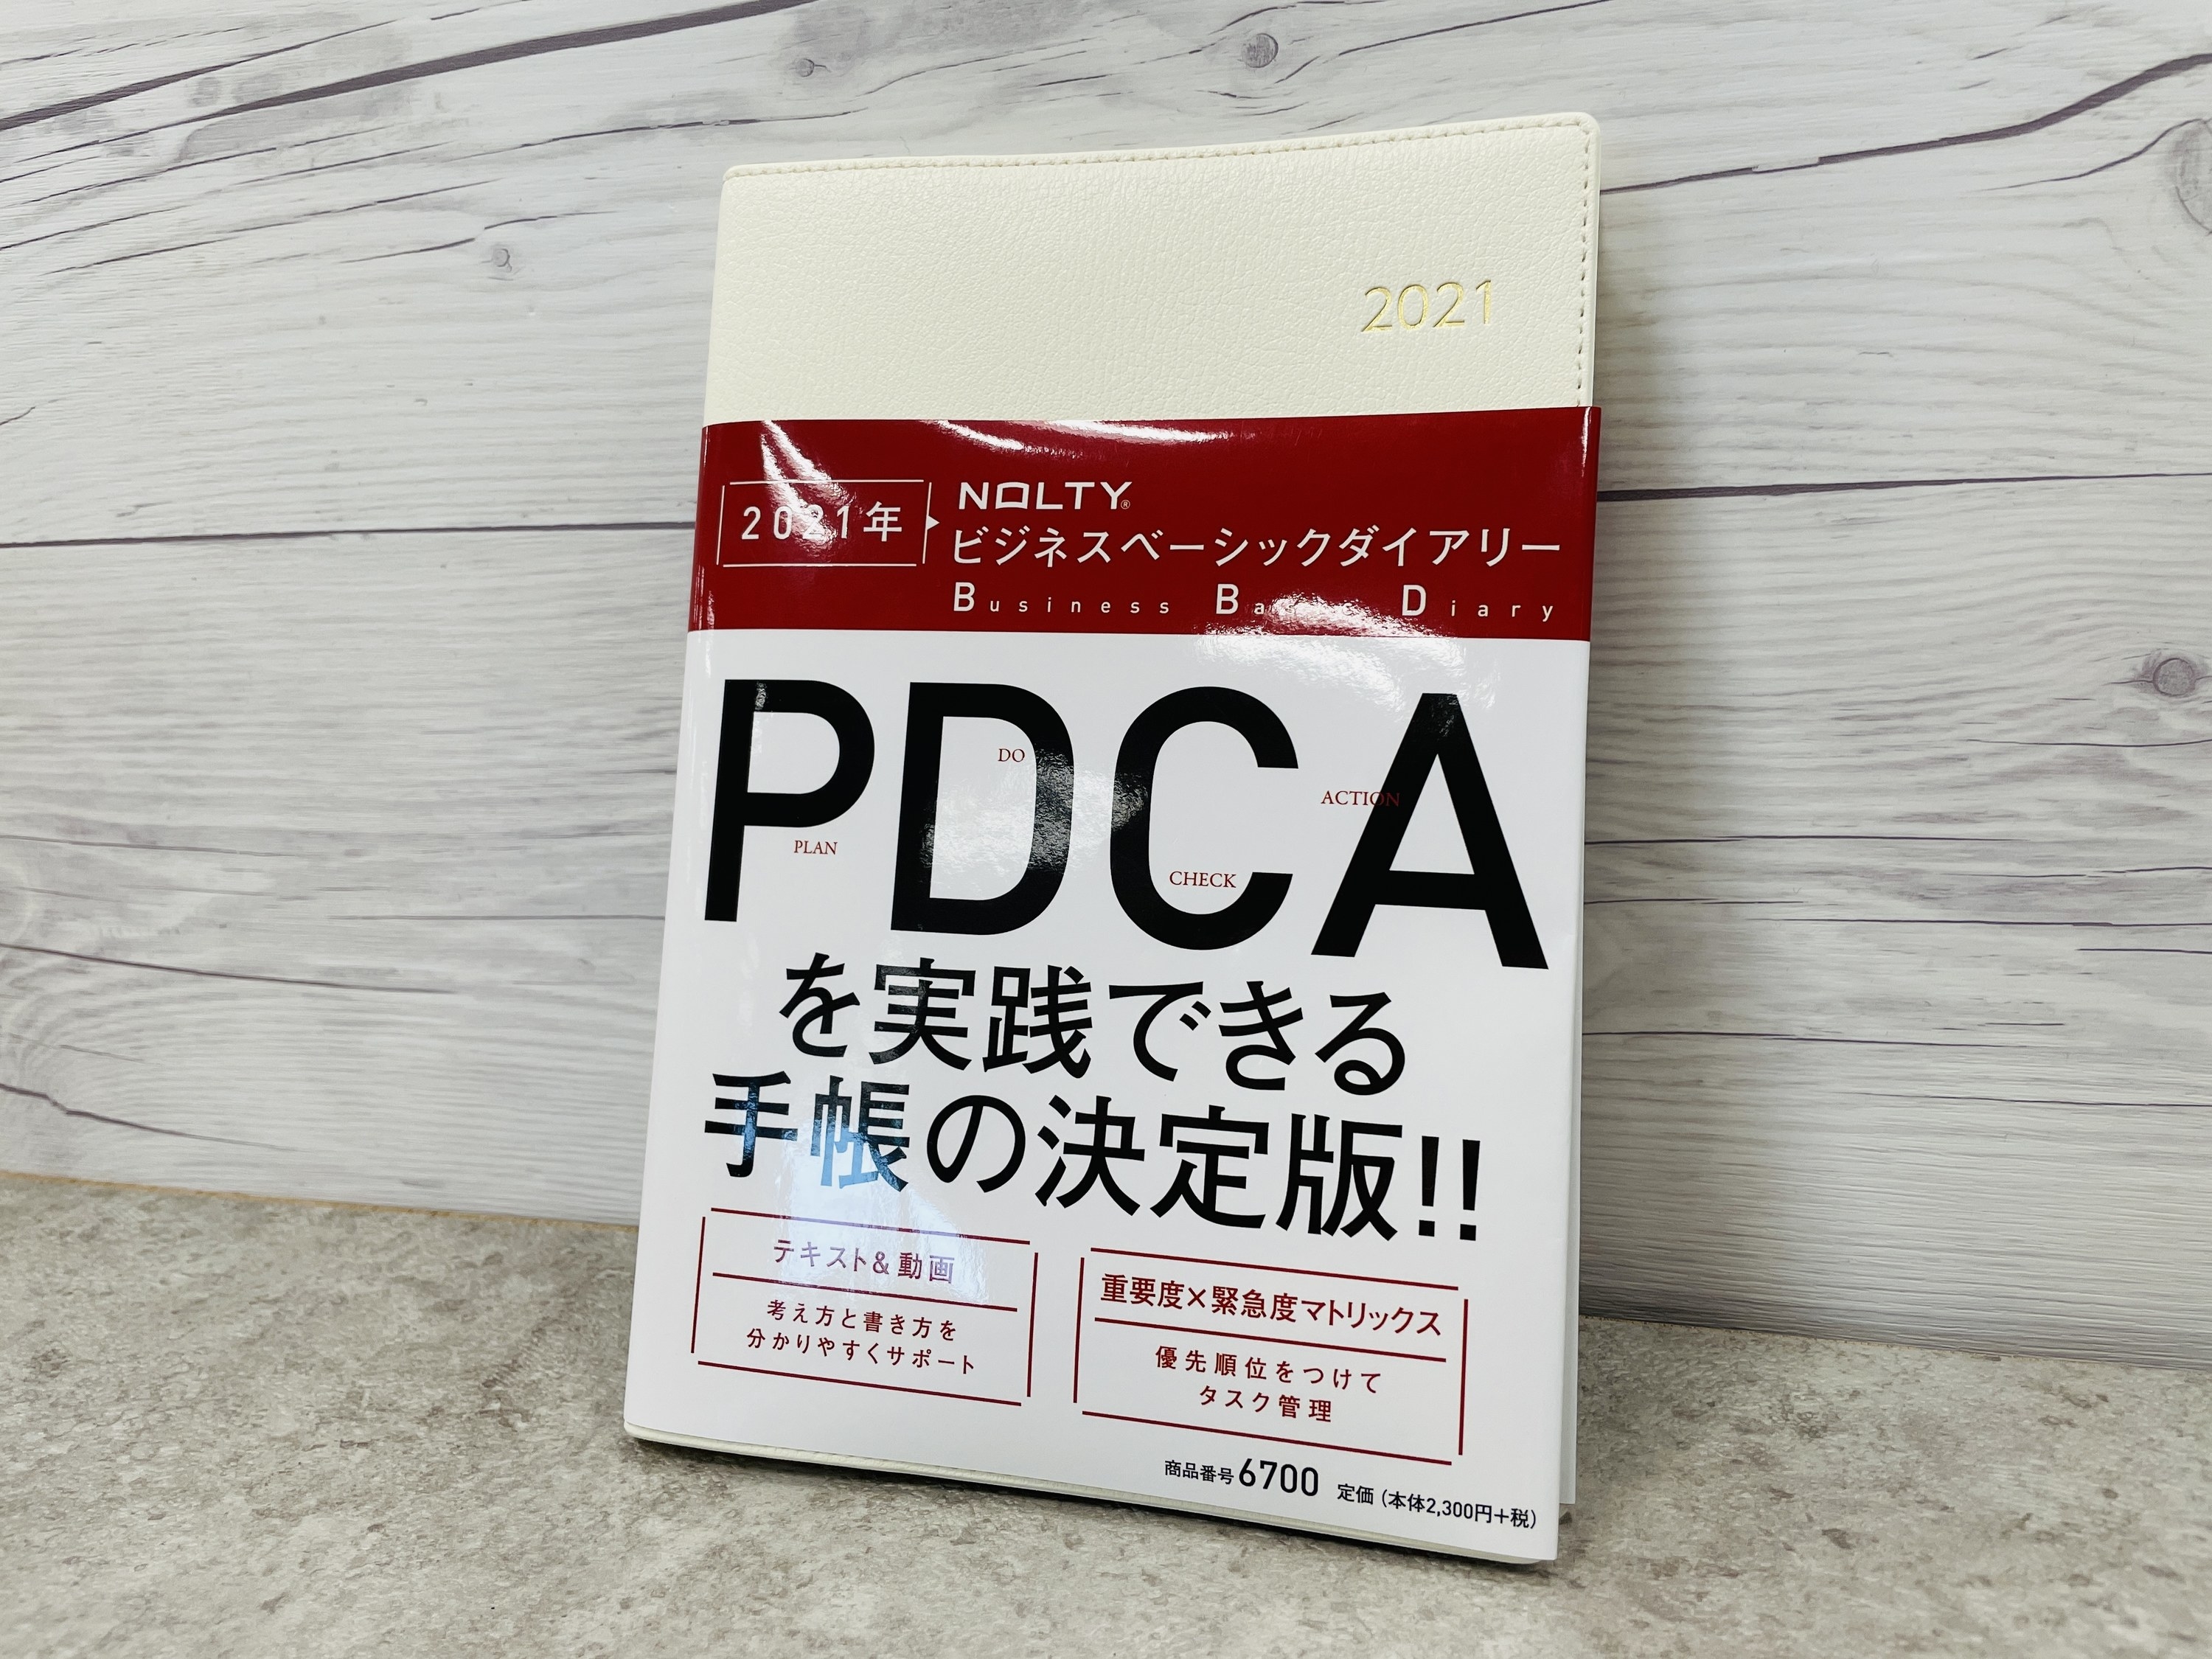 来年こそ「PDCA」を実践したい人におすすめの「NOLTY」という手帳